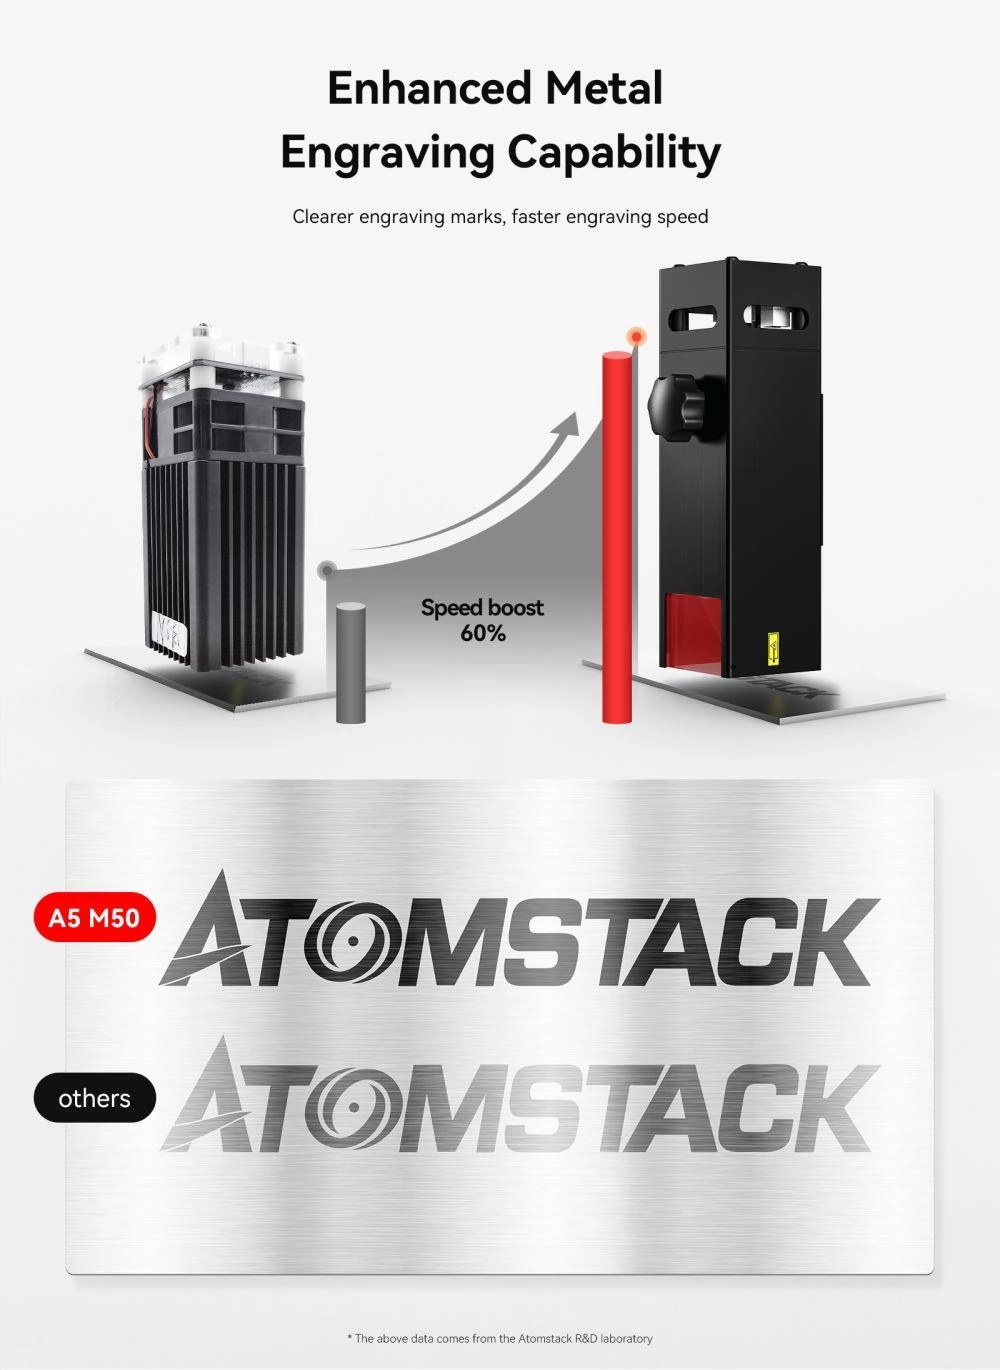 ATOMSTACK A5 M50 Pro Laserschneider und Gravierer, Fixfokus, Vierfachlinsen-Doppelkompressionspunkt, 410 x 400 mm